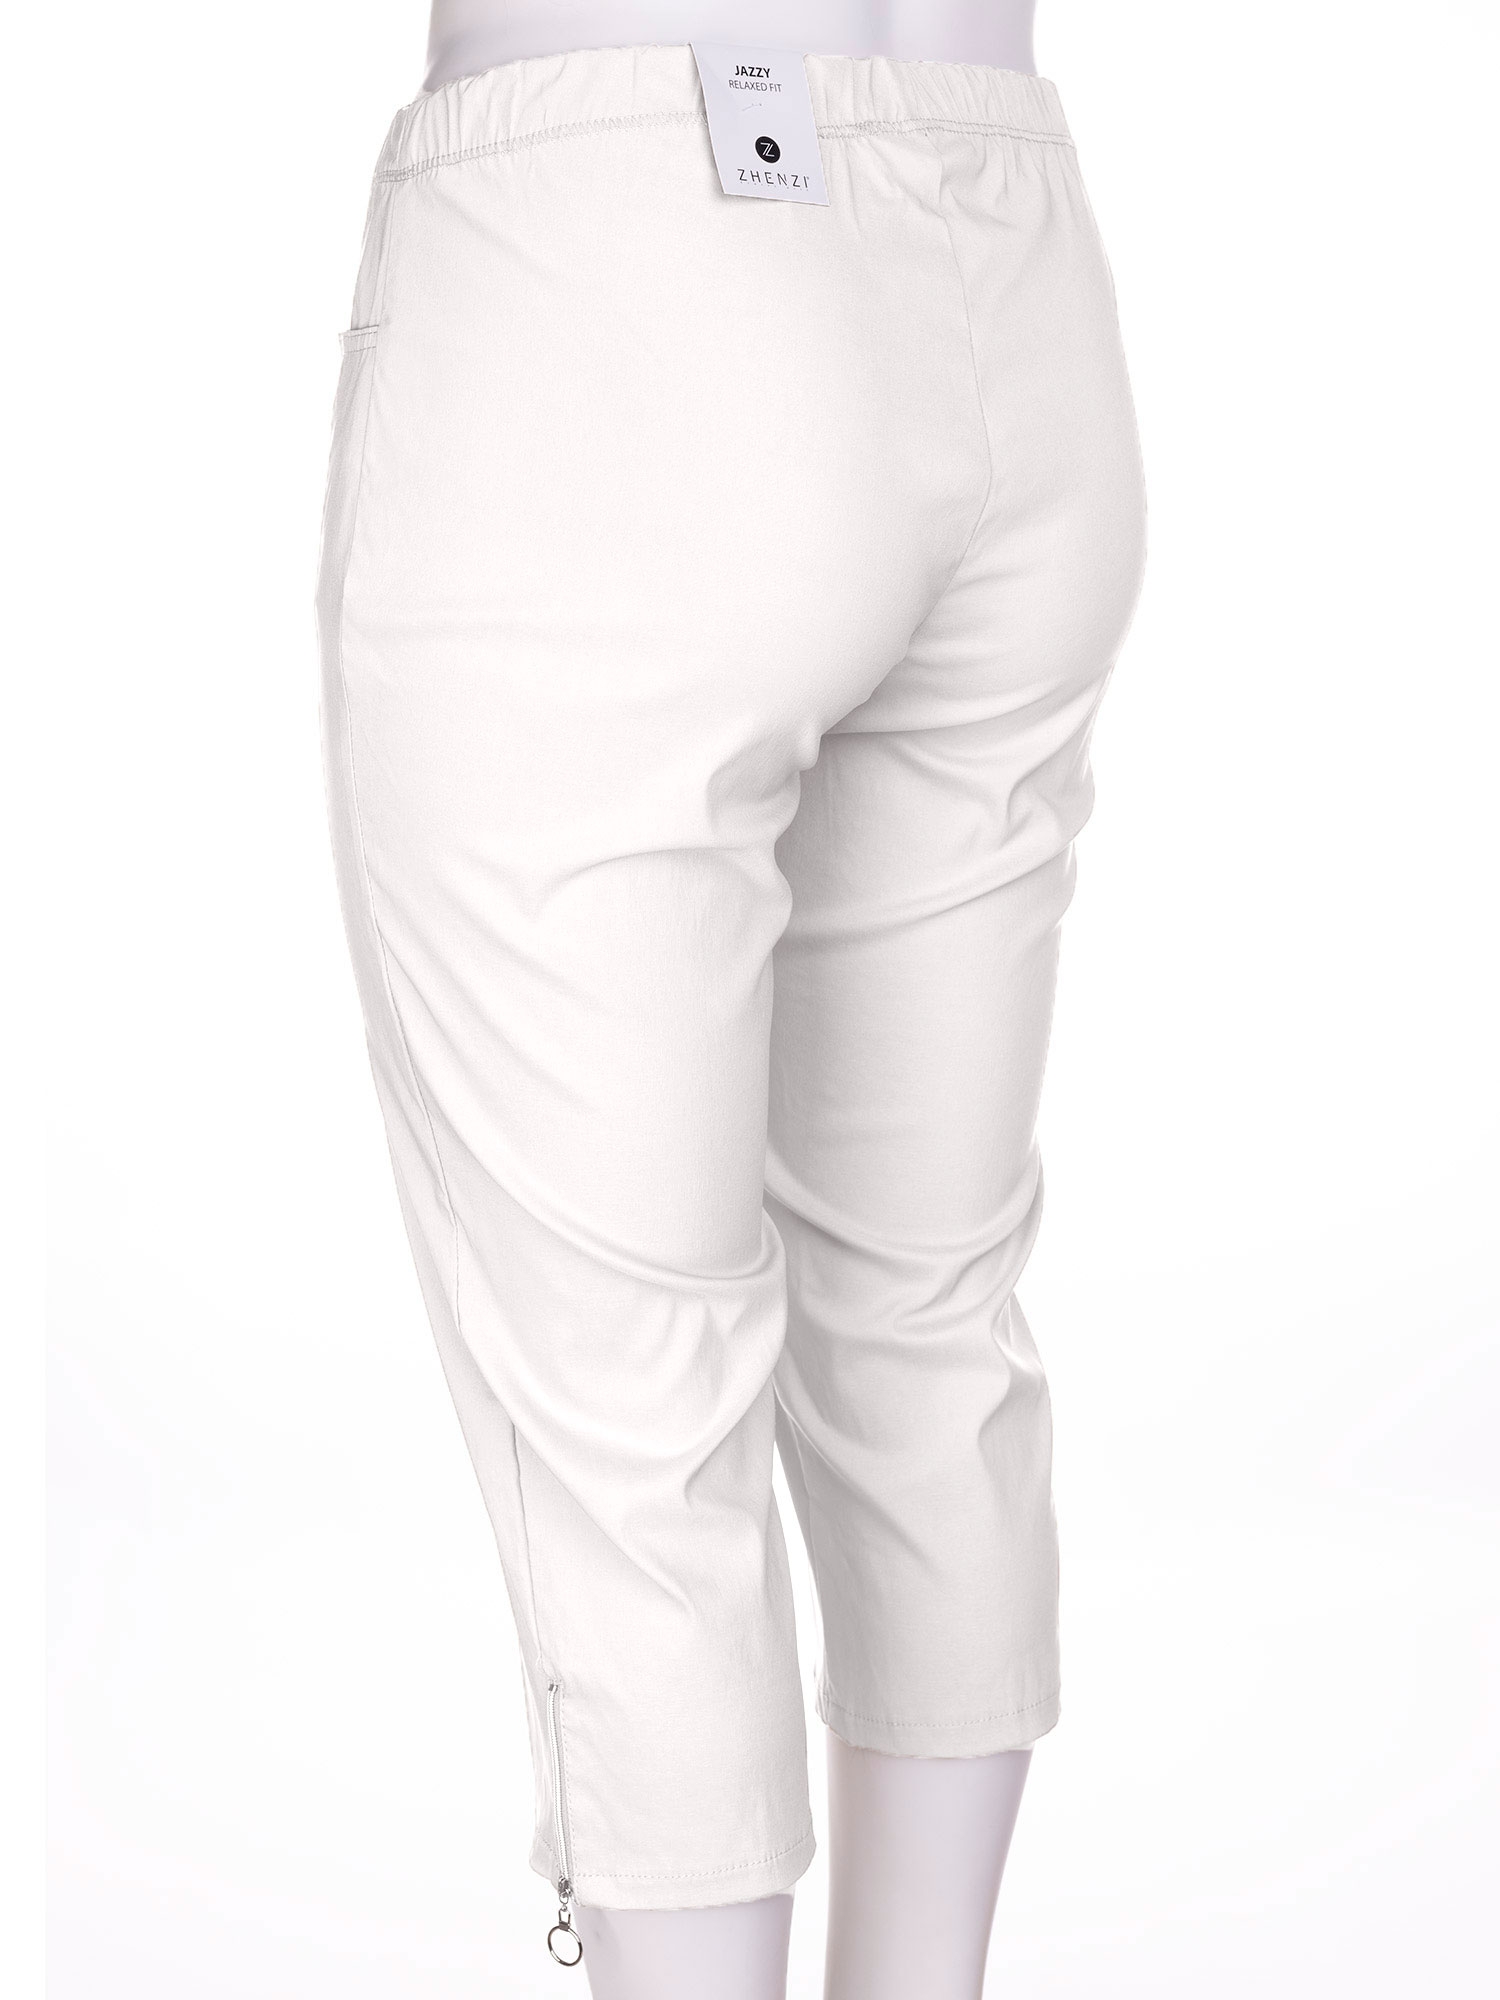 JAZZY - Hvide capri bukser med lynlås detalje fra Zhenzi